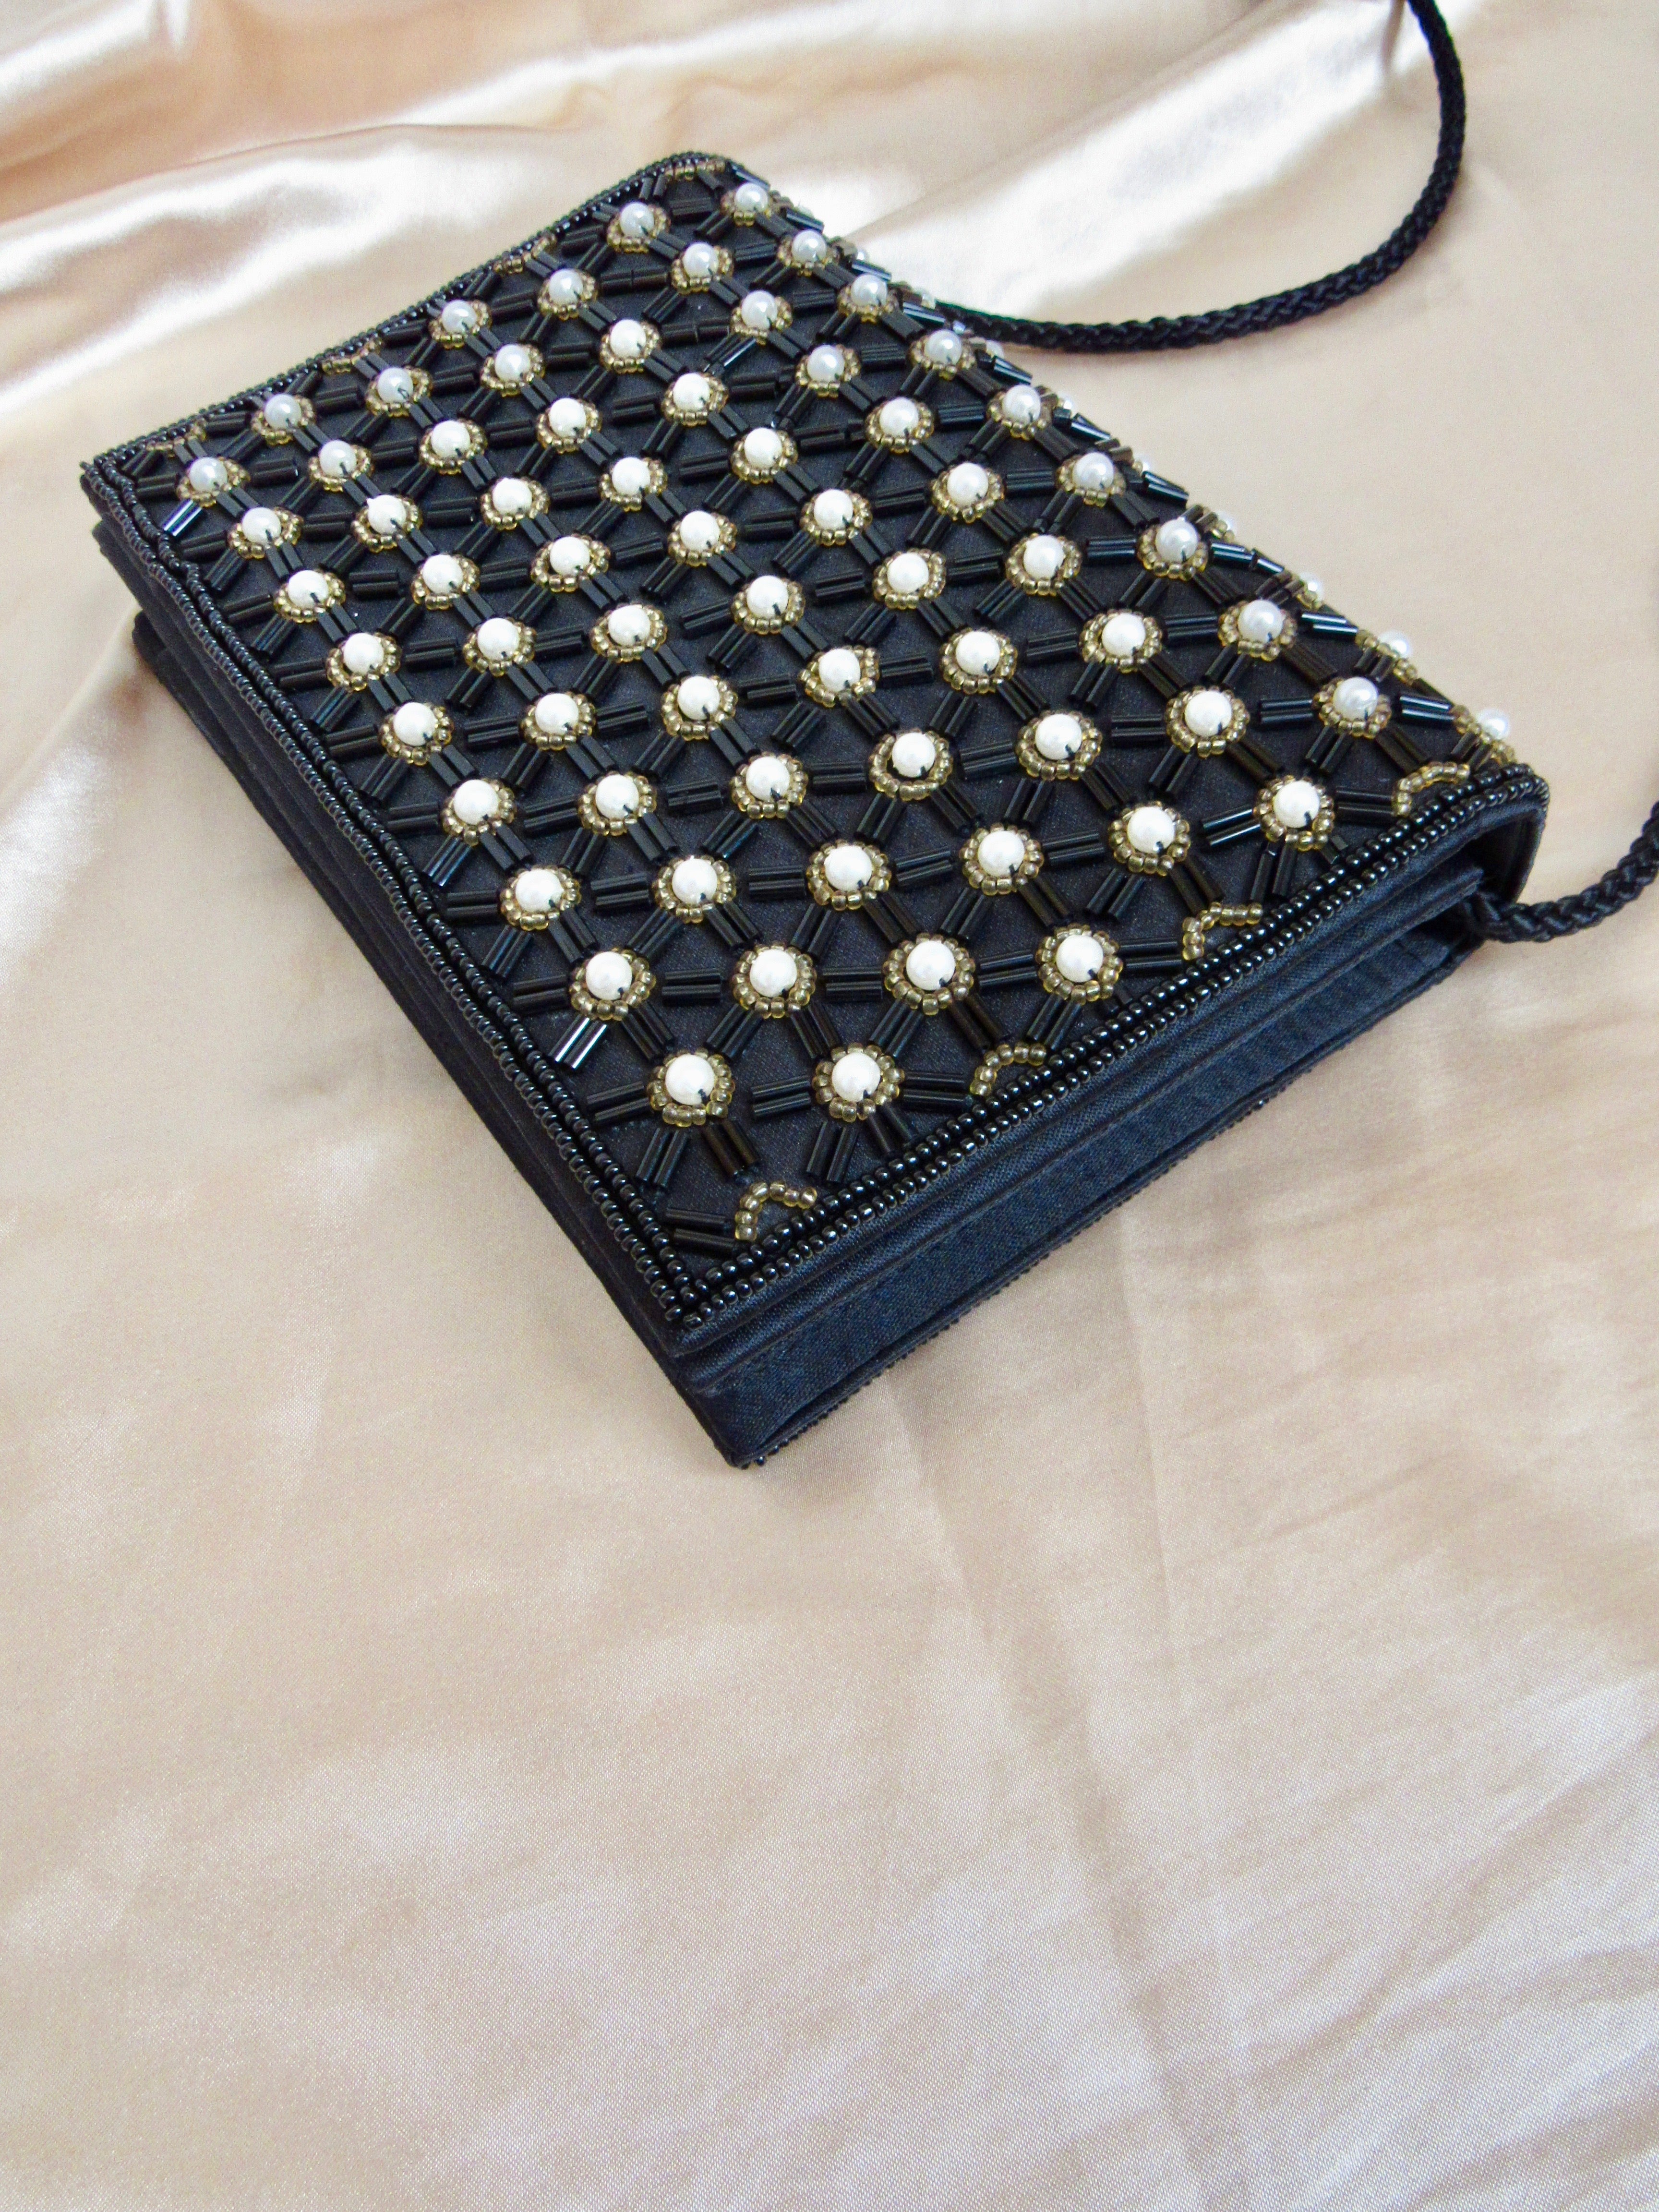 Vintage Pearl Beads Black Clutch